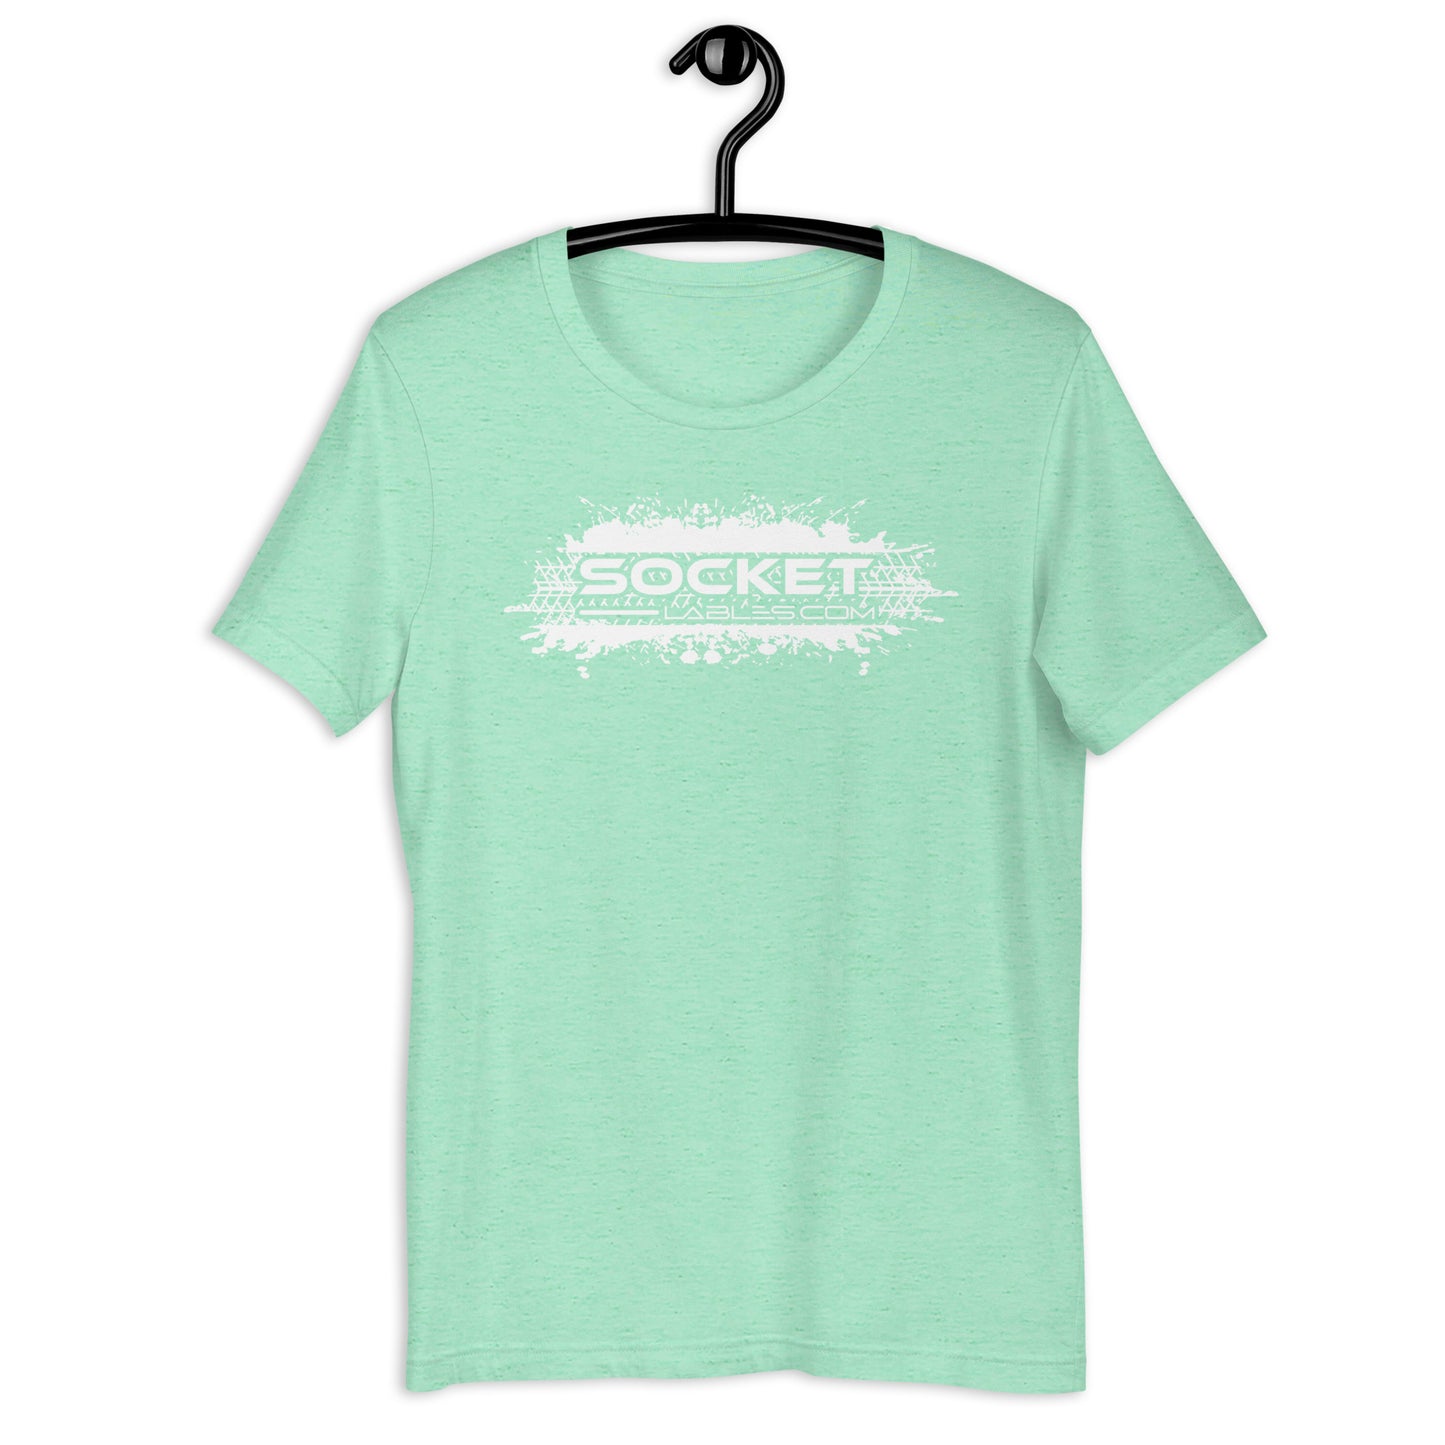 Socket Labels .com t-shirt